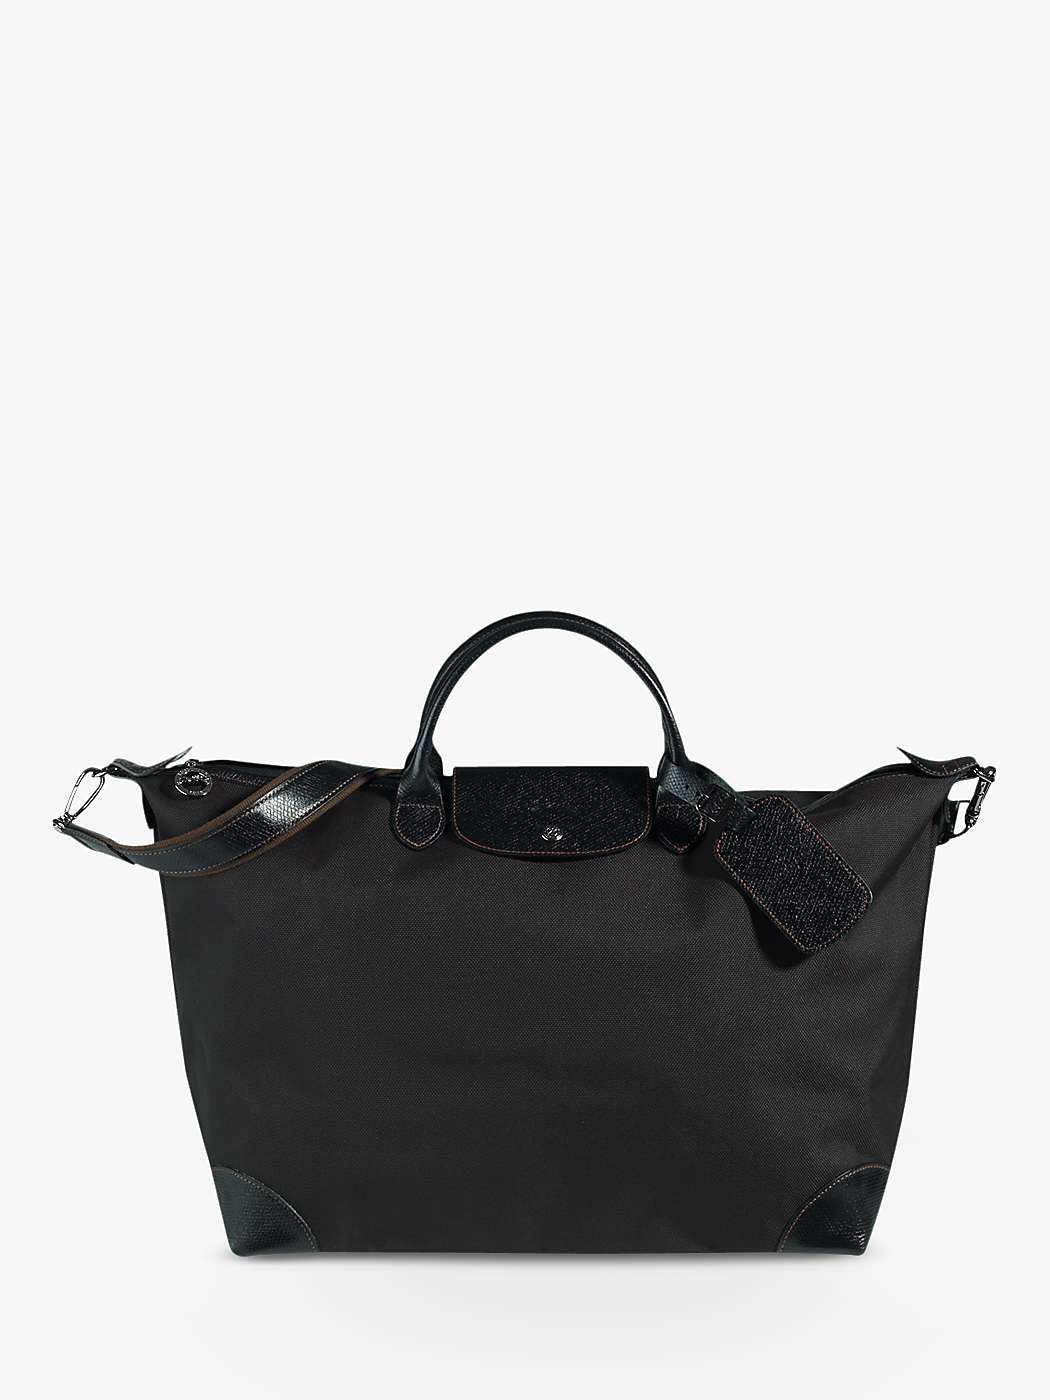 Buy Longchamp Boxford Large Travel Bag Online at johnlewis.com